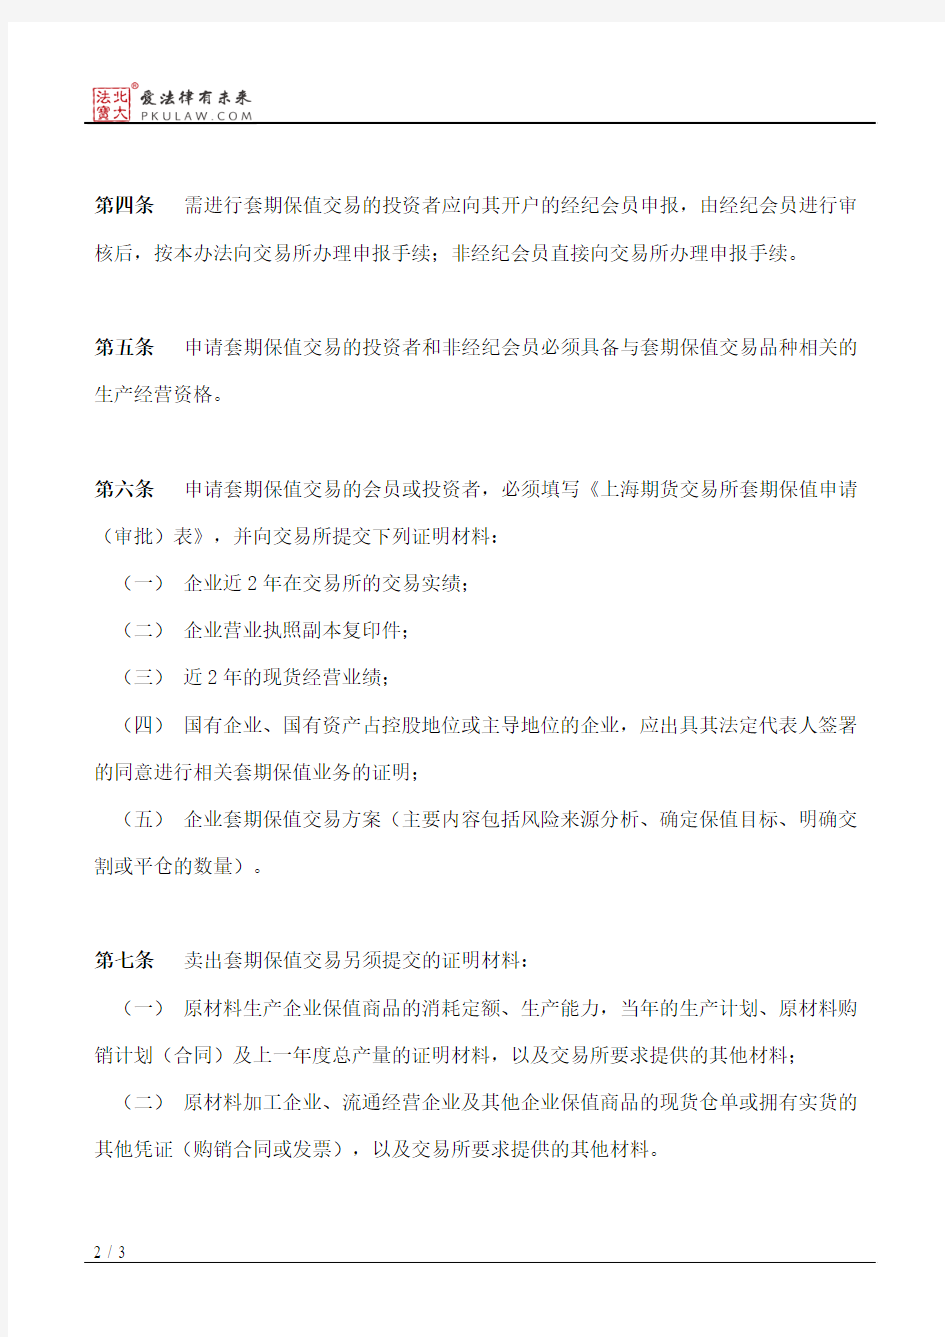 上海期货交易所套期保值交易管理办法